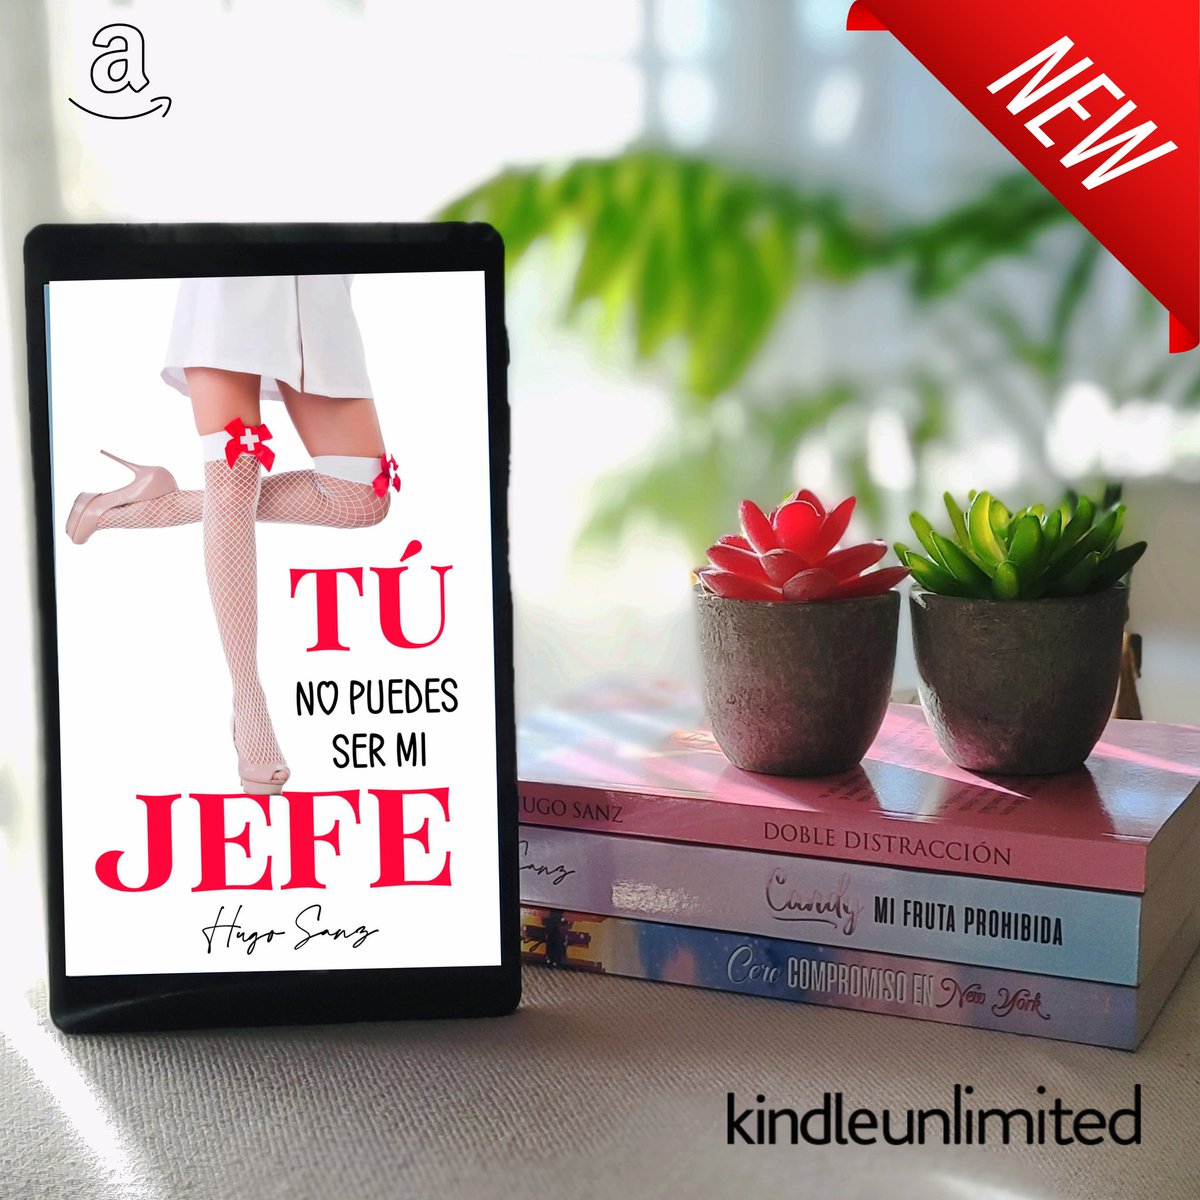 🄽♥🄾♥🅅♥🄴♥🄳♥🄰♥🄳♥

🖤TÚ NO PUEDES SER MI JEFE 🖤
📚👉🏼leer.la/B0CLL1VYZY

𝑇𝑜𝑑𝑎𝑠 𝑙𝑎𝑠 𝑛𝑜𝑣𝑒𝑙𝑎𝑠 𝑑𝑒𝑙 𝑎𝑢𝑡𝑜𝑟 🖤relinks.me/HugoSanz

#Amazon #KindleUnlimited #ebook #queleer #LibrosRecomendados #amor #novelaromantica #HugoSanz